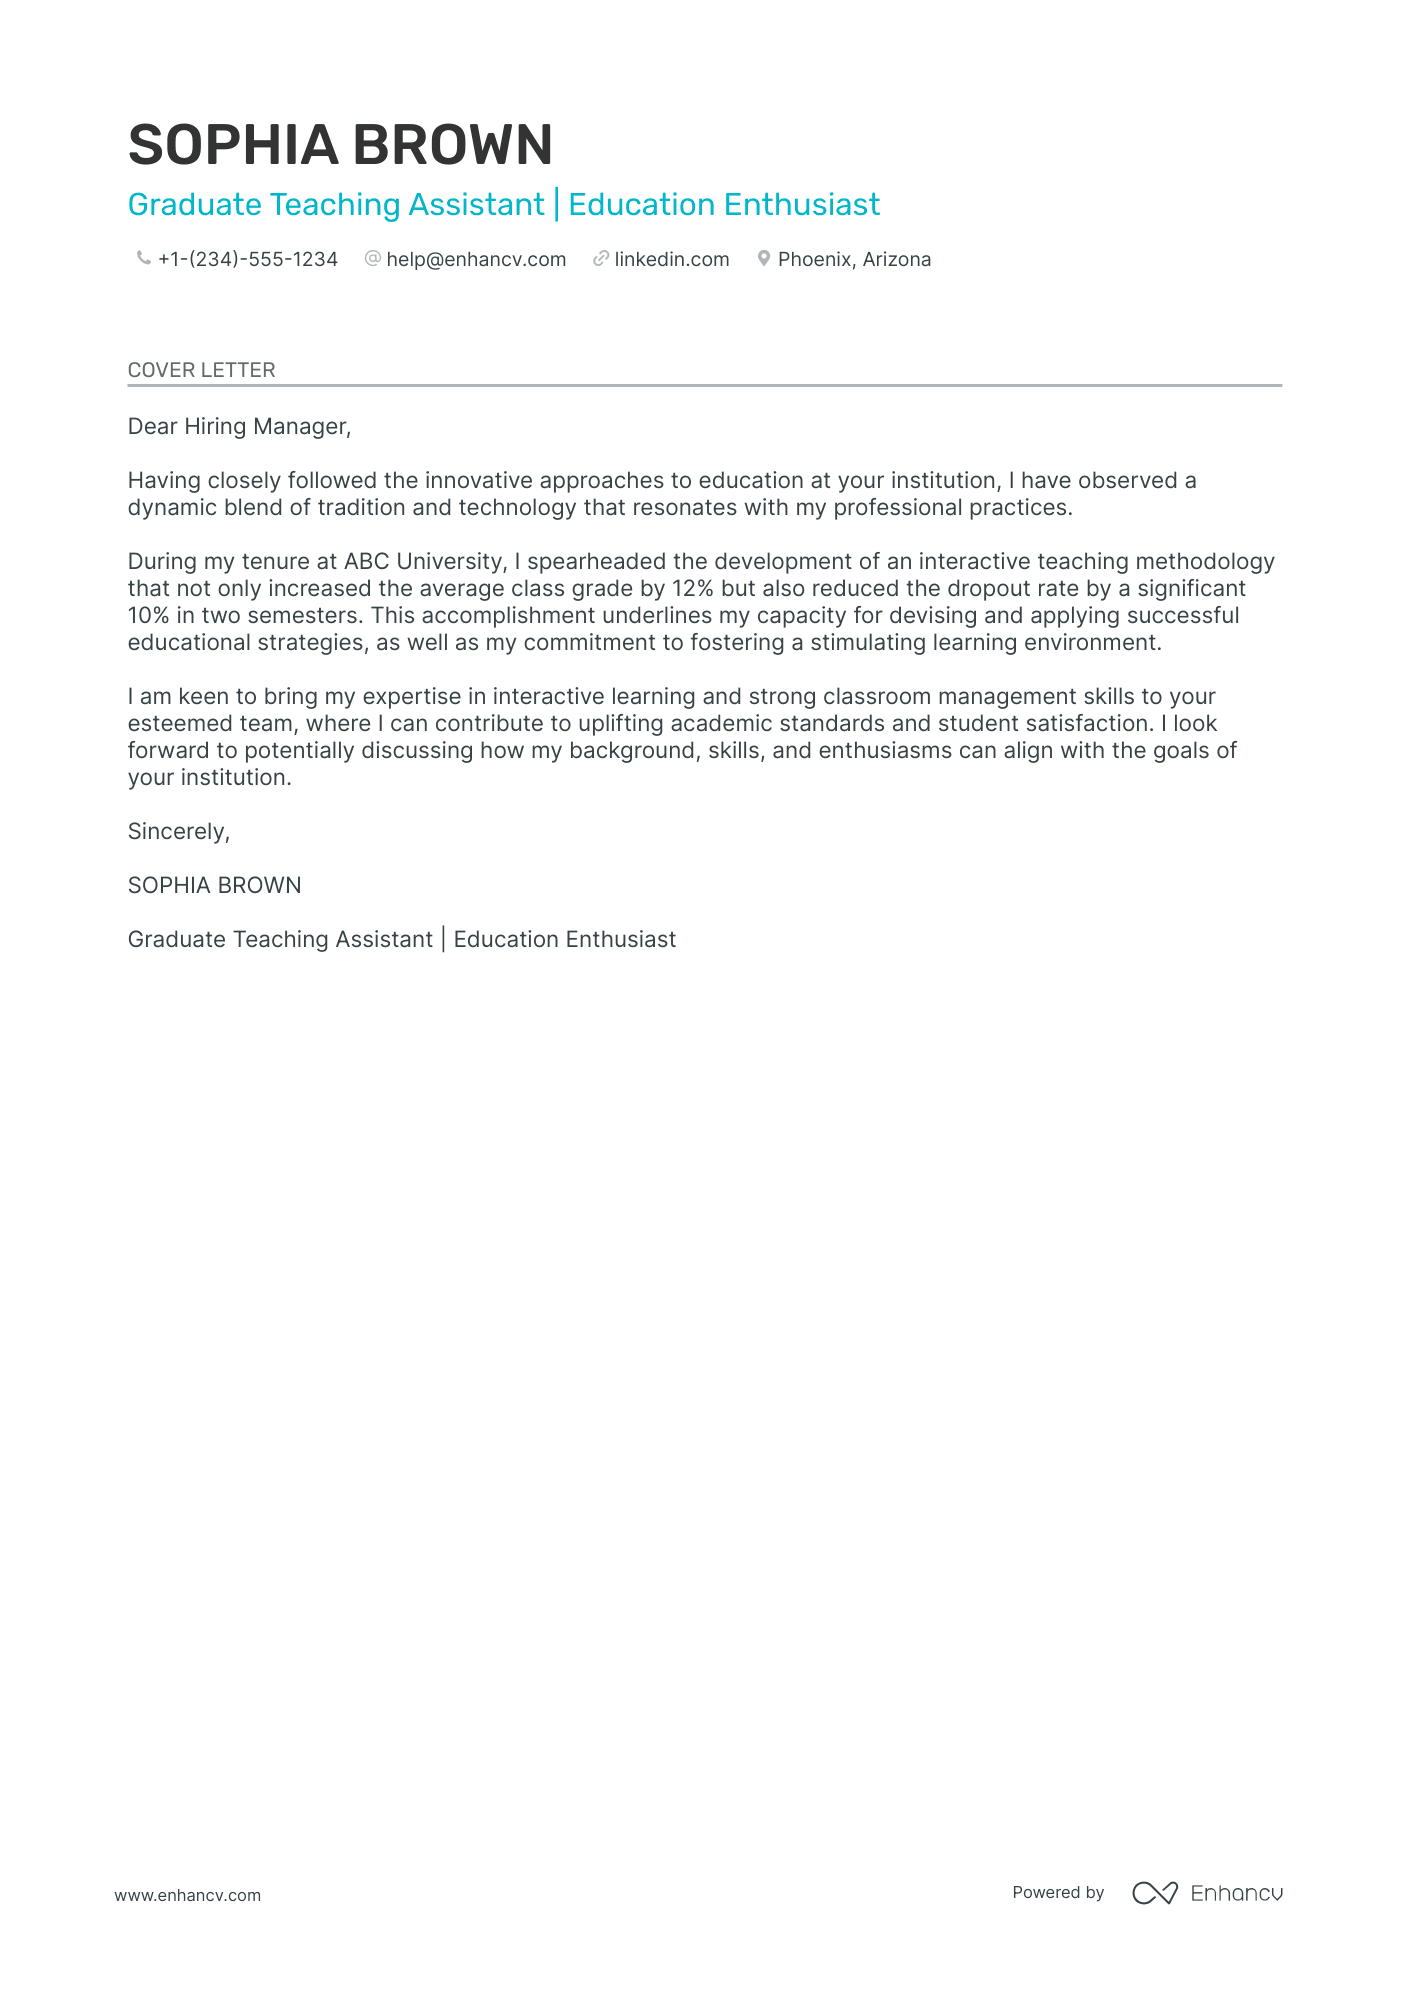 job application letter for teacher assistant